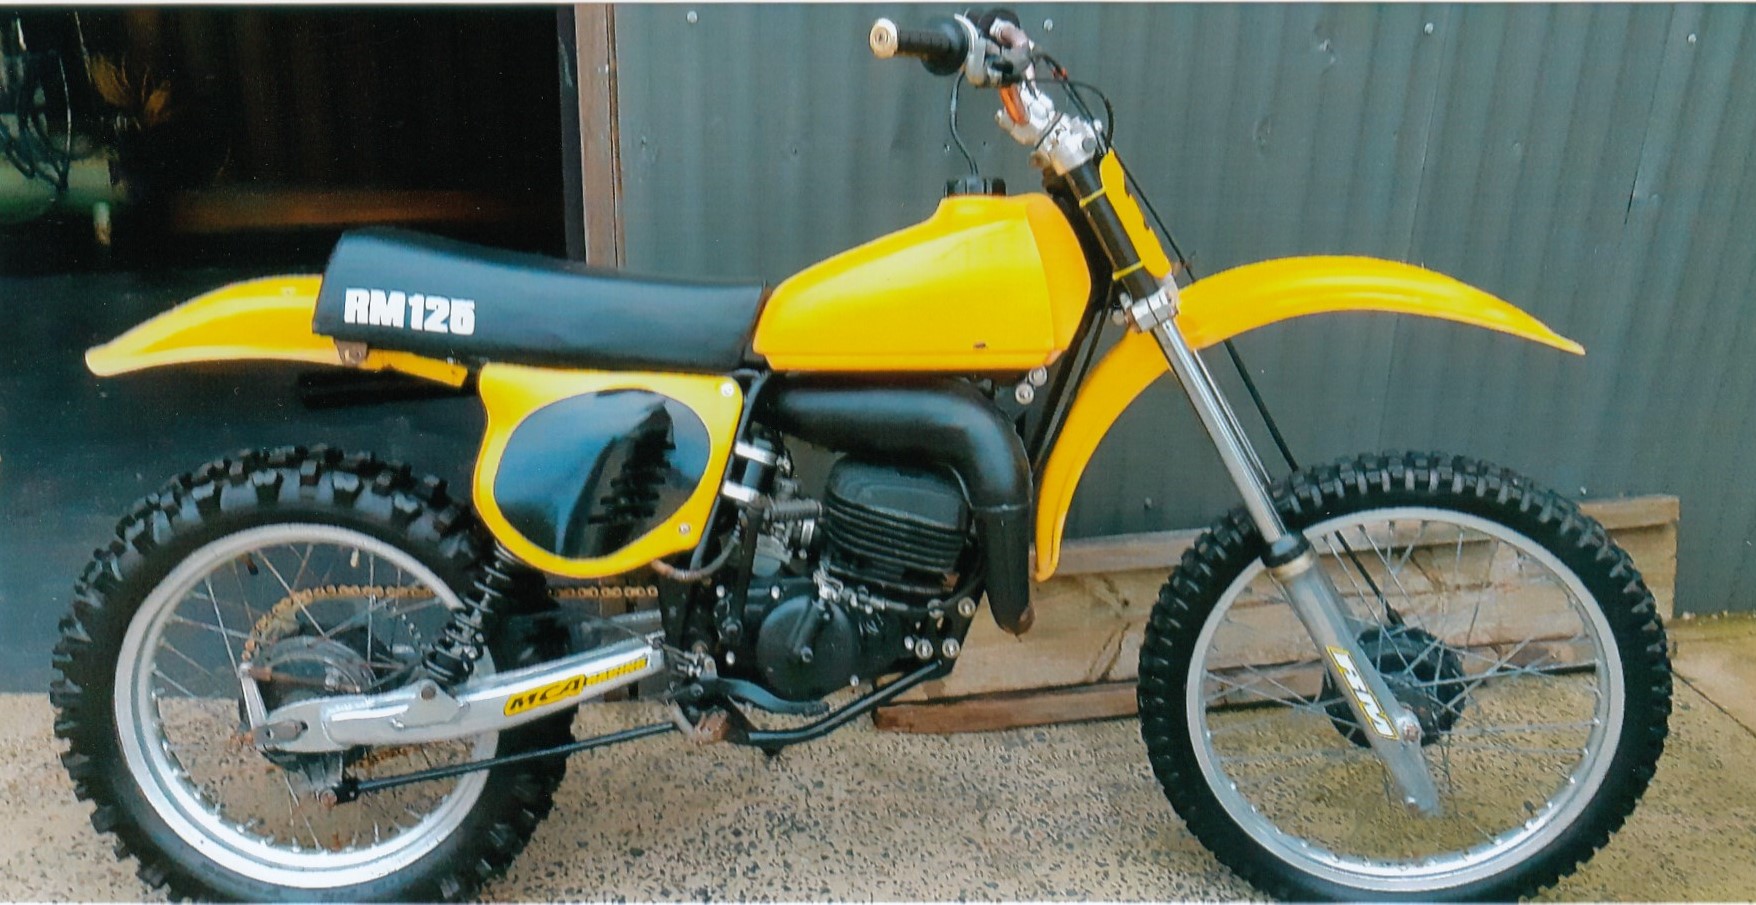 1978 Suzuki Rm 125cc Dirt Bike - JBM5021294 - JUST BIKES